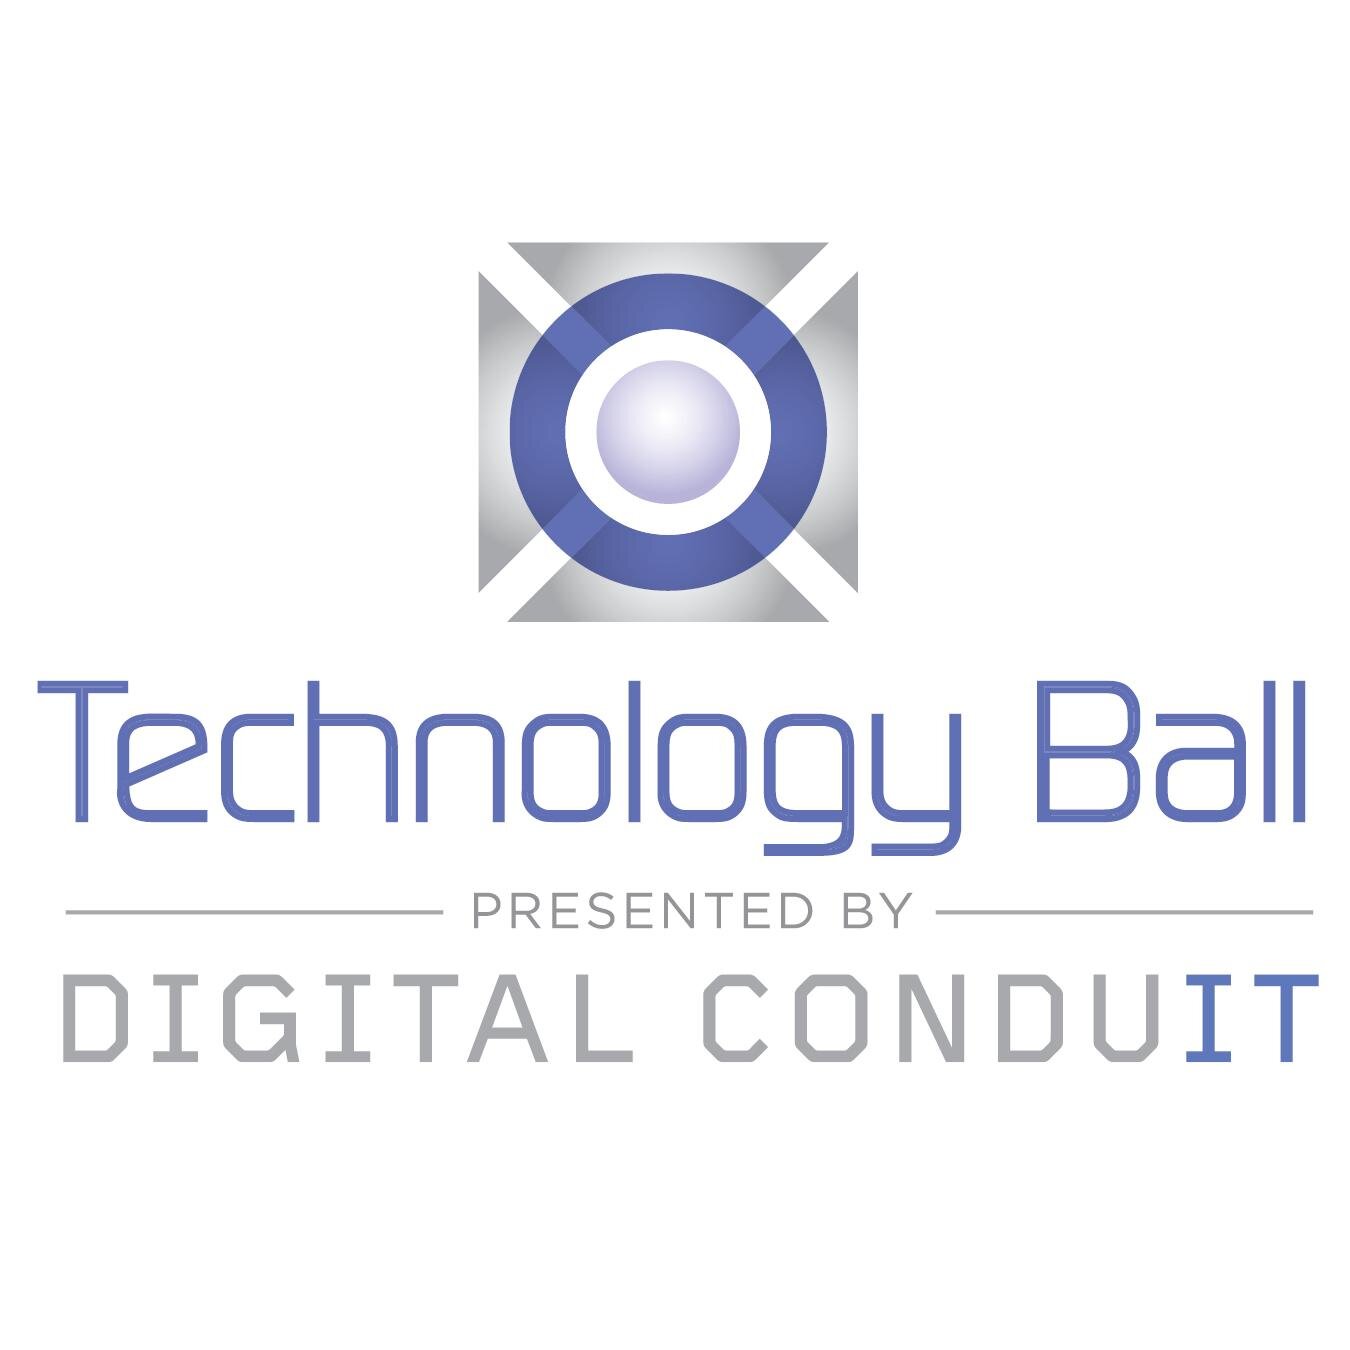 Technology Ball